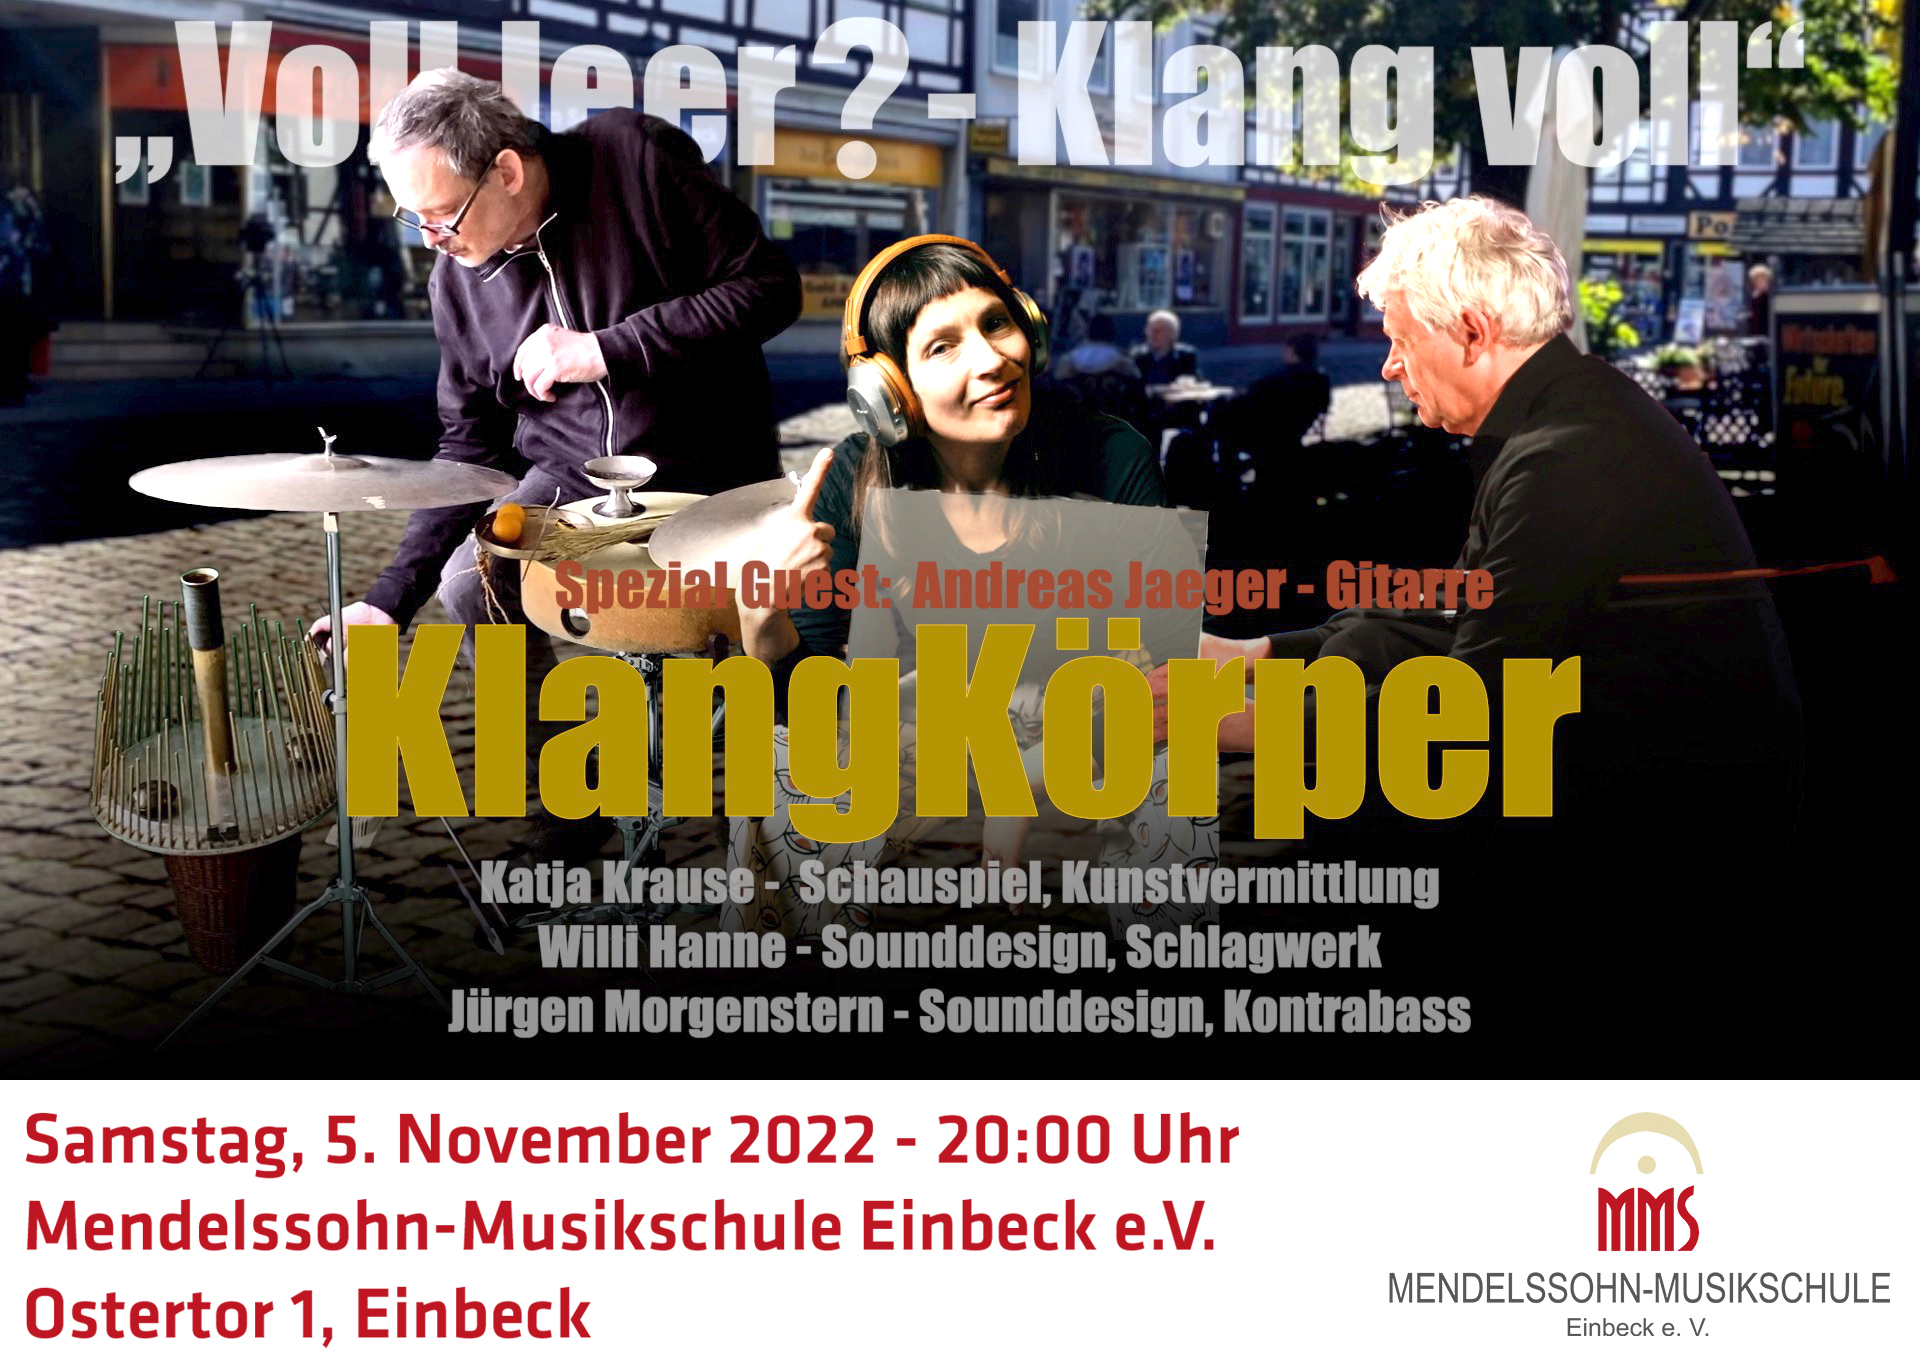 Samstag, 5. November 2022, 20:00 Uhr Projekt UnErhört: Konzert mit dem Ensemble KlangKörper: „Voll leer? Klang voll"